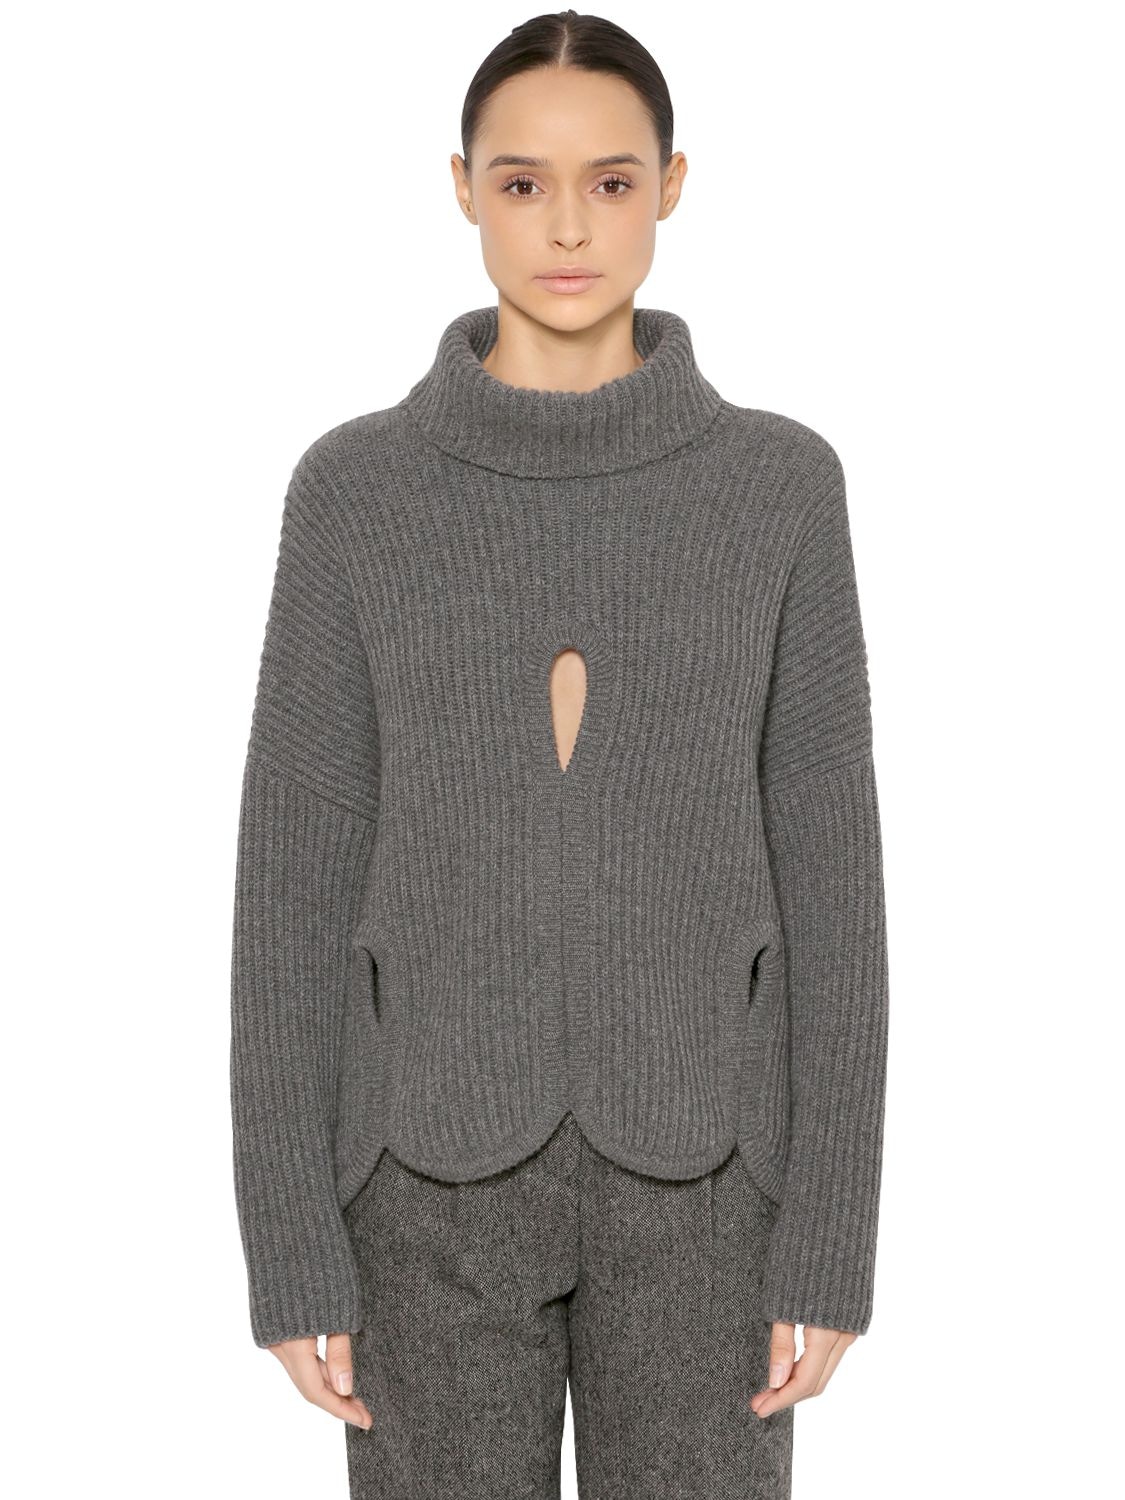 Antonio Berardi Wool Turtleneck Sweater W/ Cutouts In Grey